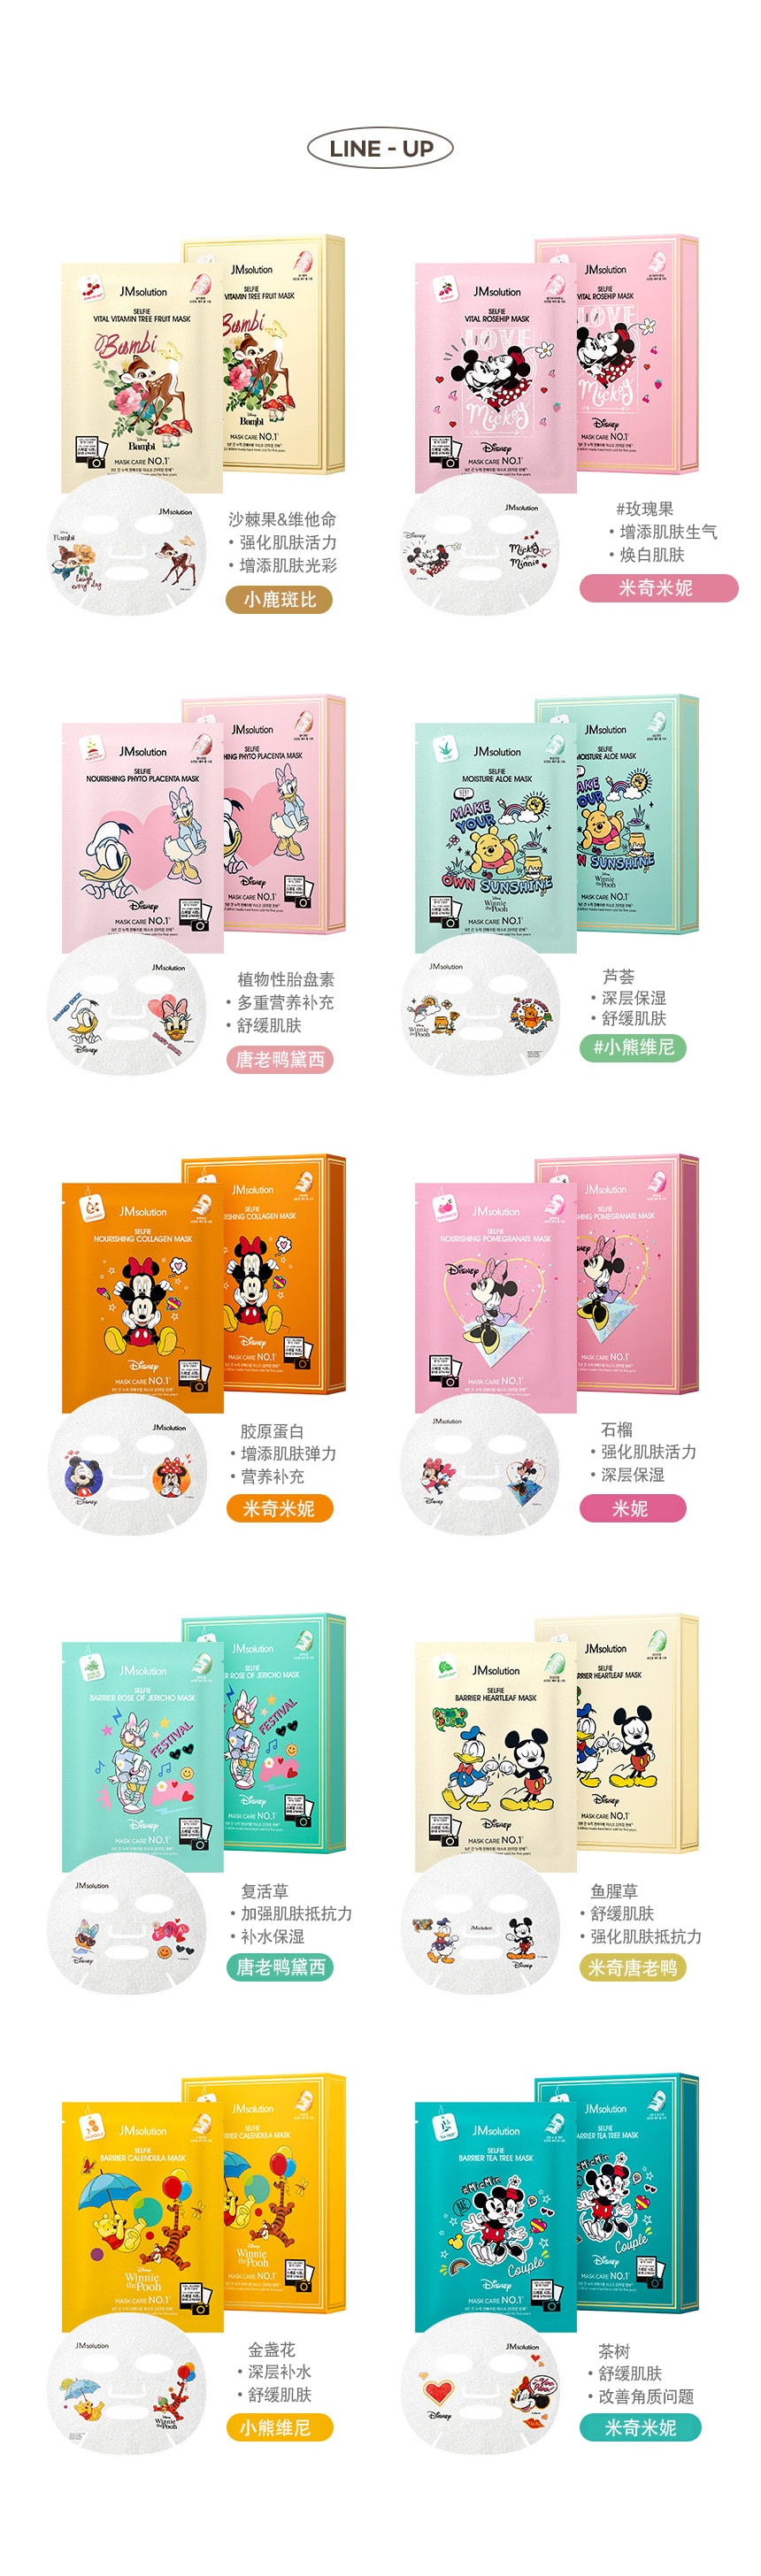 韓國 JMsolution 【迪士尼聯名款】限量卡通面膜系列 #小鹿斑比-沙棘果&維他命 10片/ 1 盒